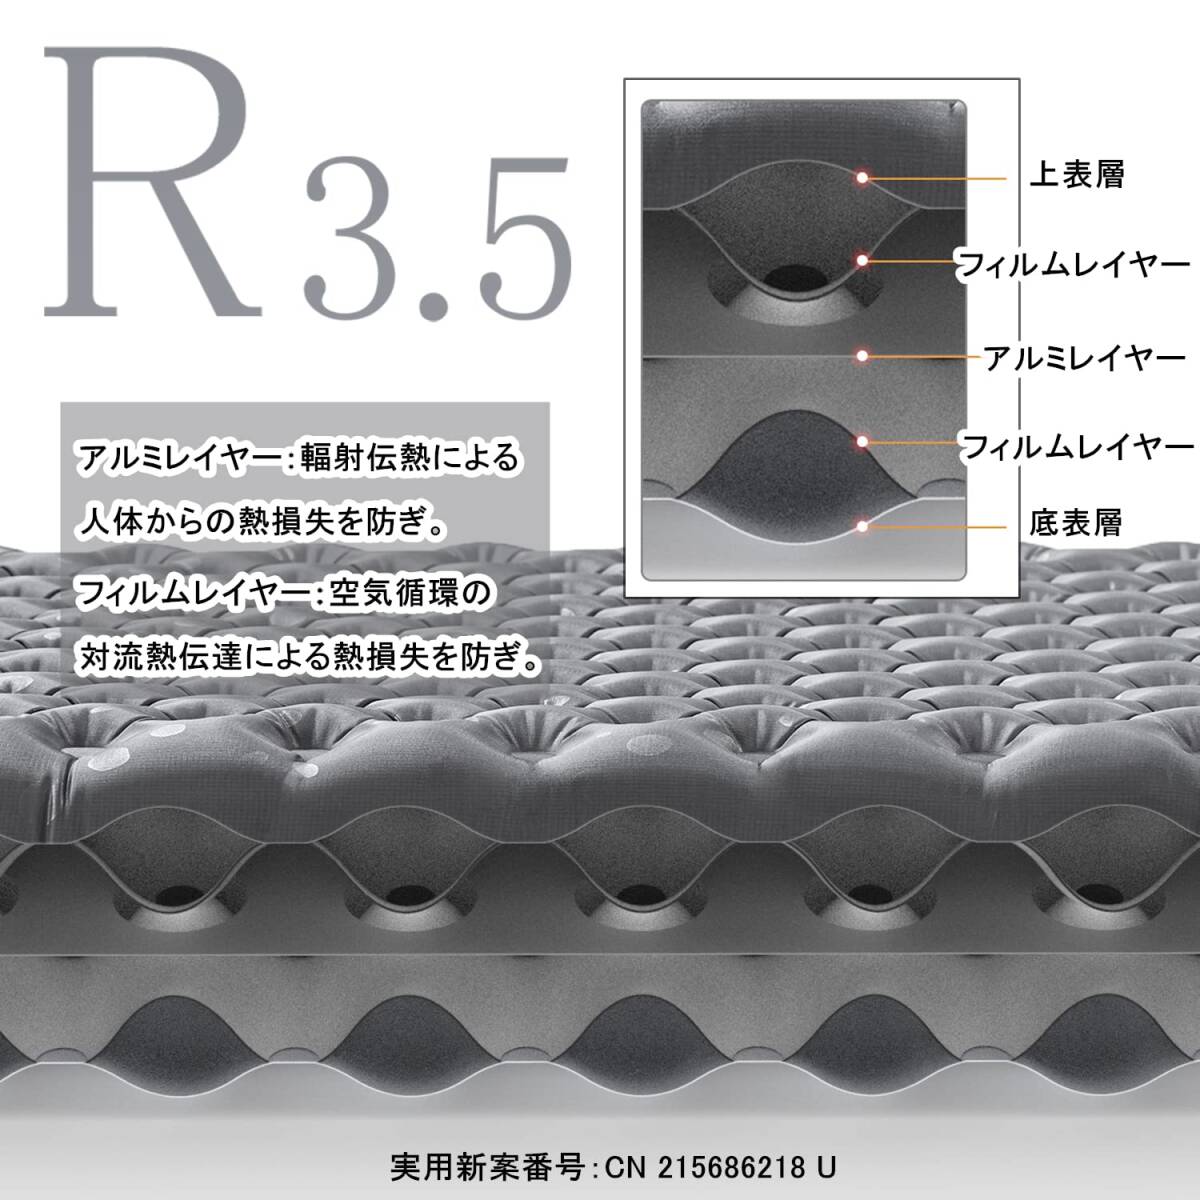 ☆エアーマット アウトア -20°C使用可能 厚手7cm 超軽量 コンパクト